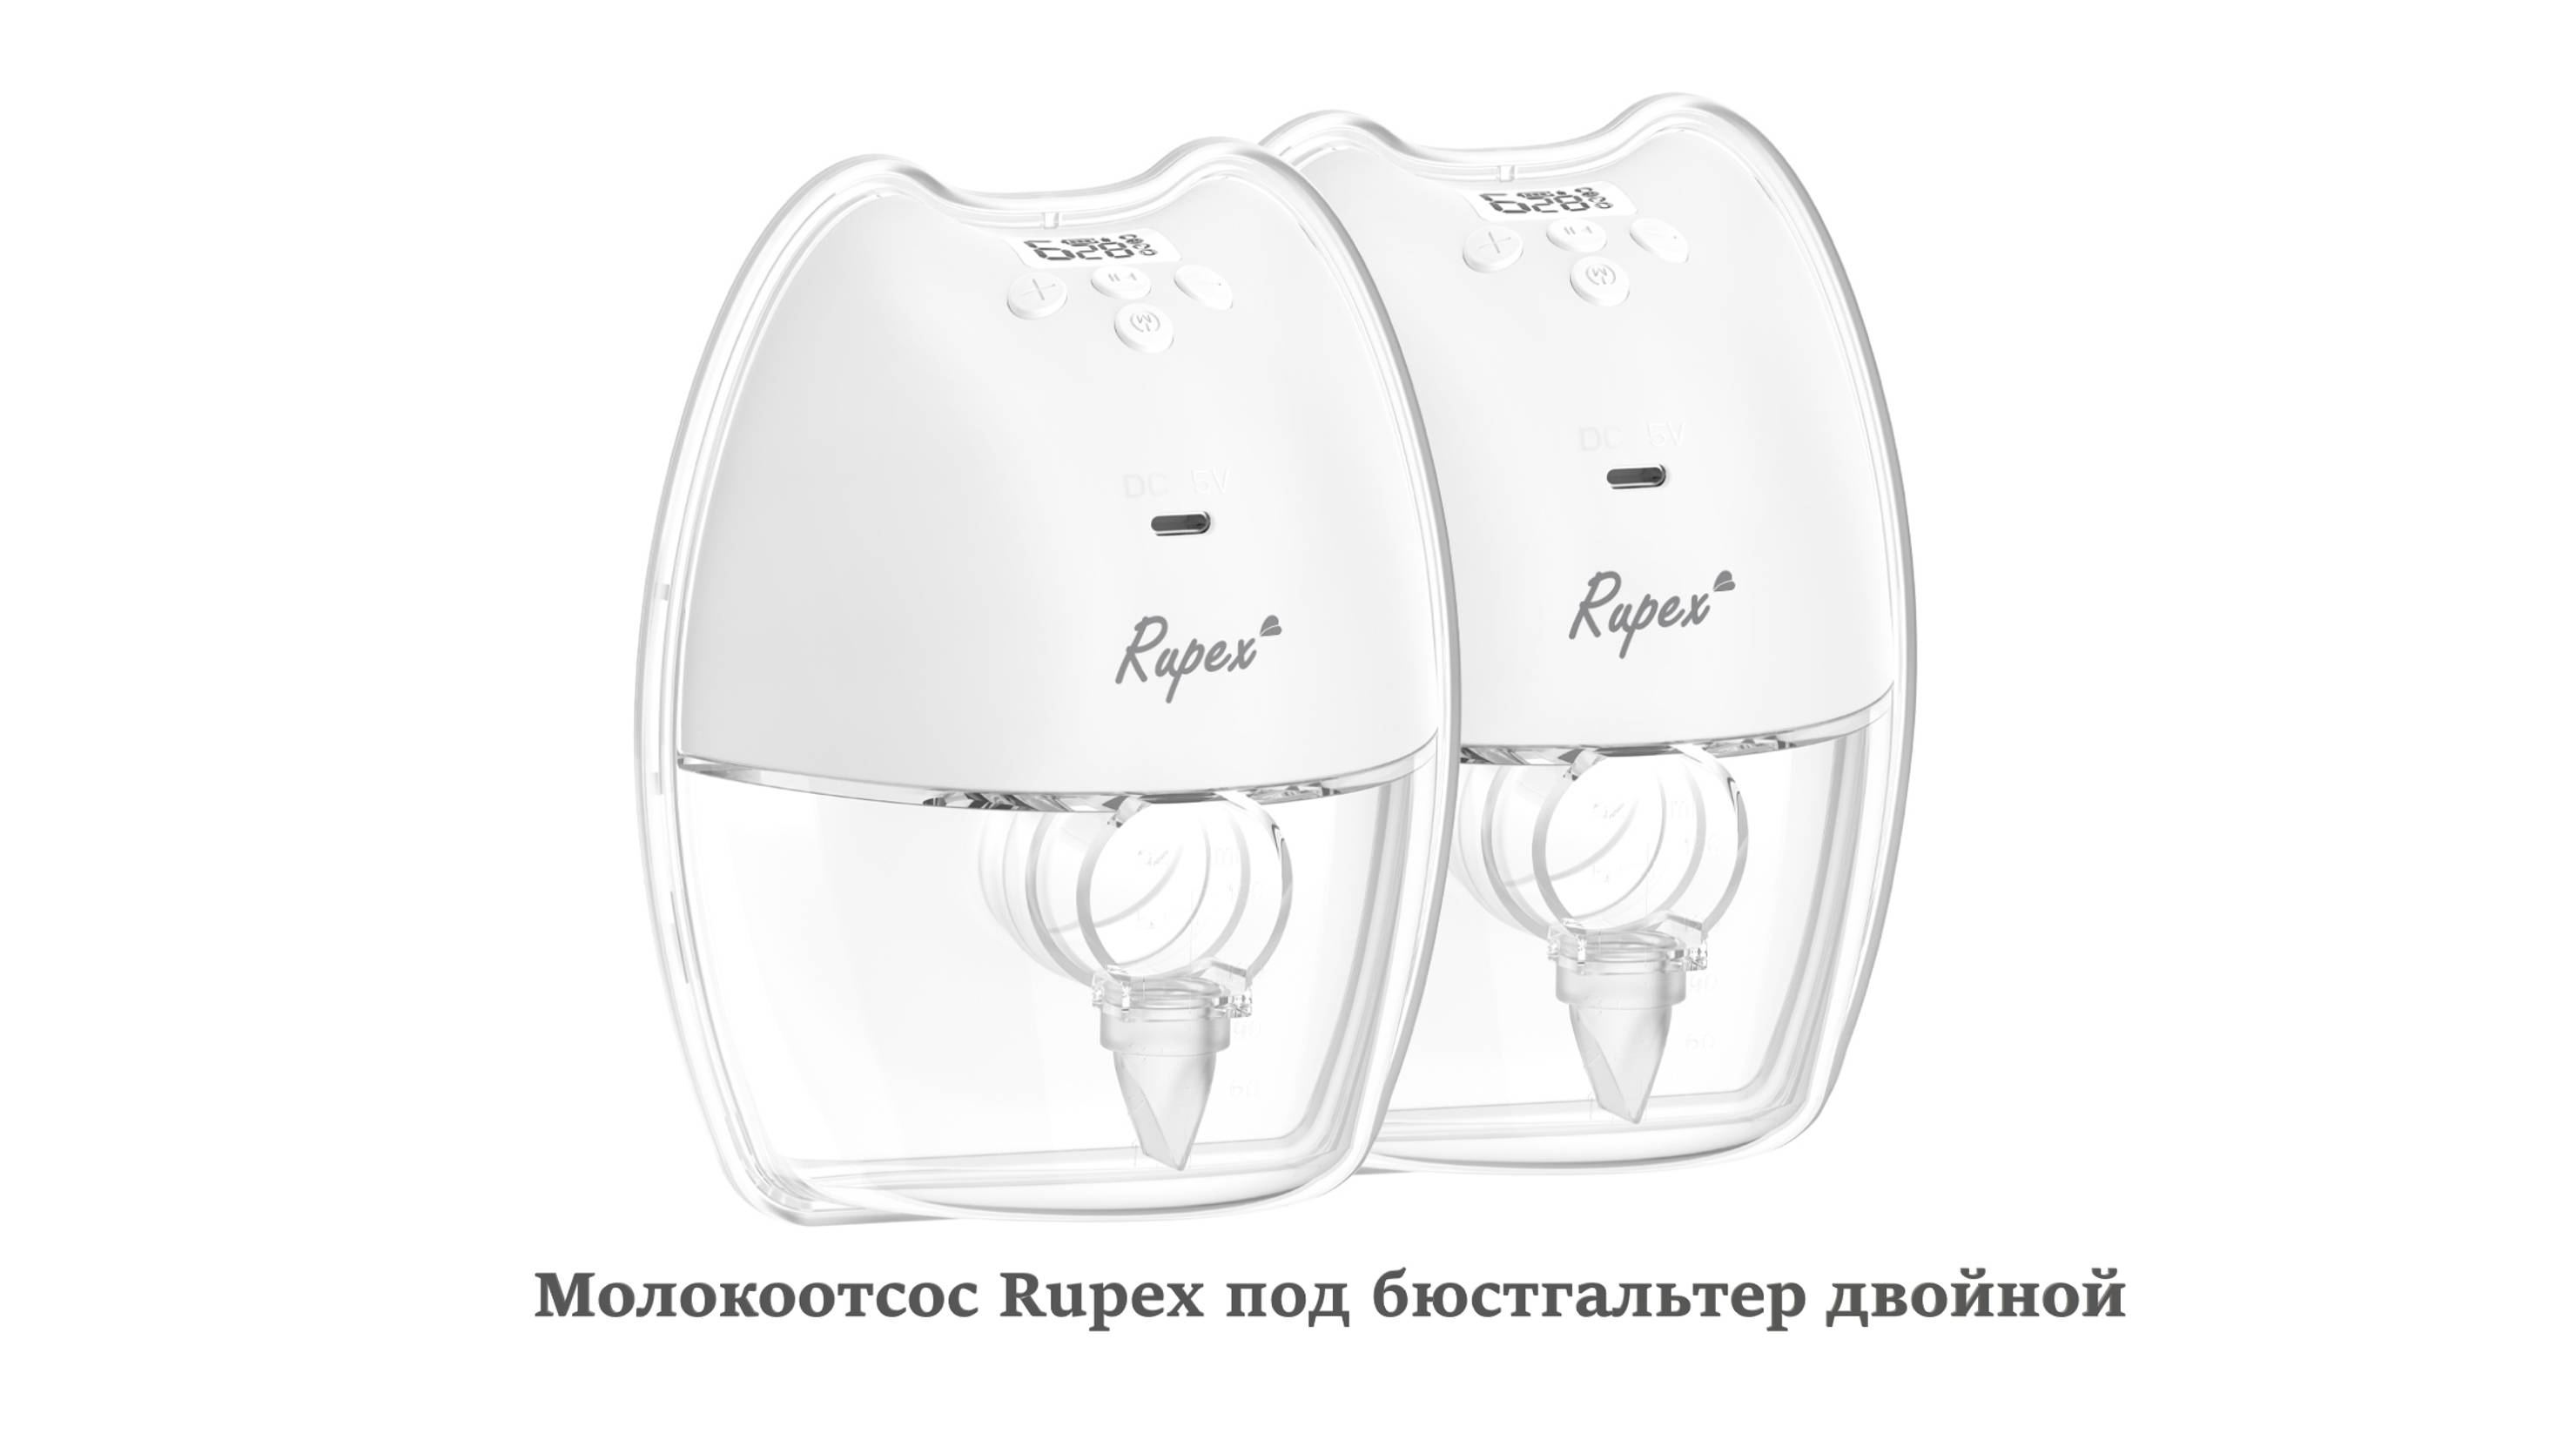 Обзор на молокоотсос Rupex под бюстгальтер для двух грудей